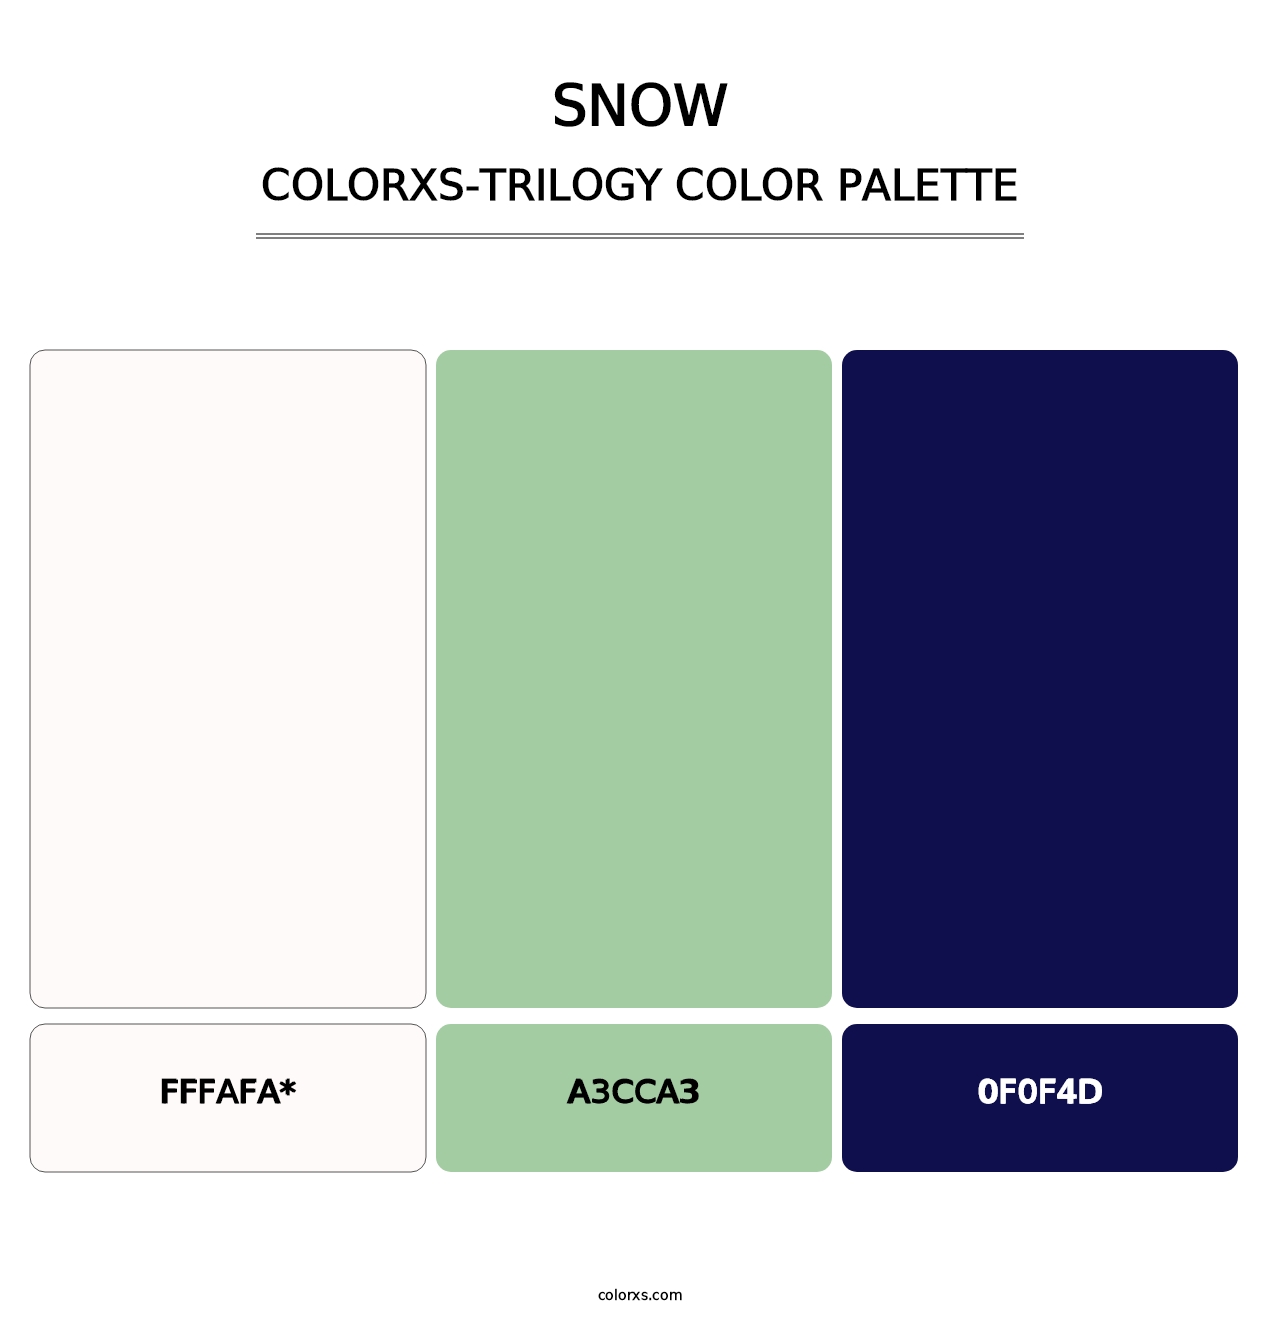 Snow - Colorxs Trilogy Palette